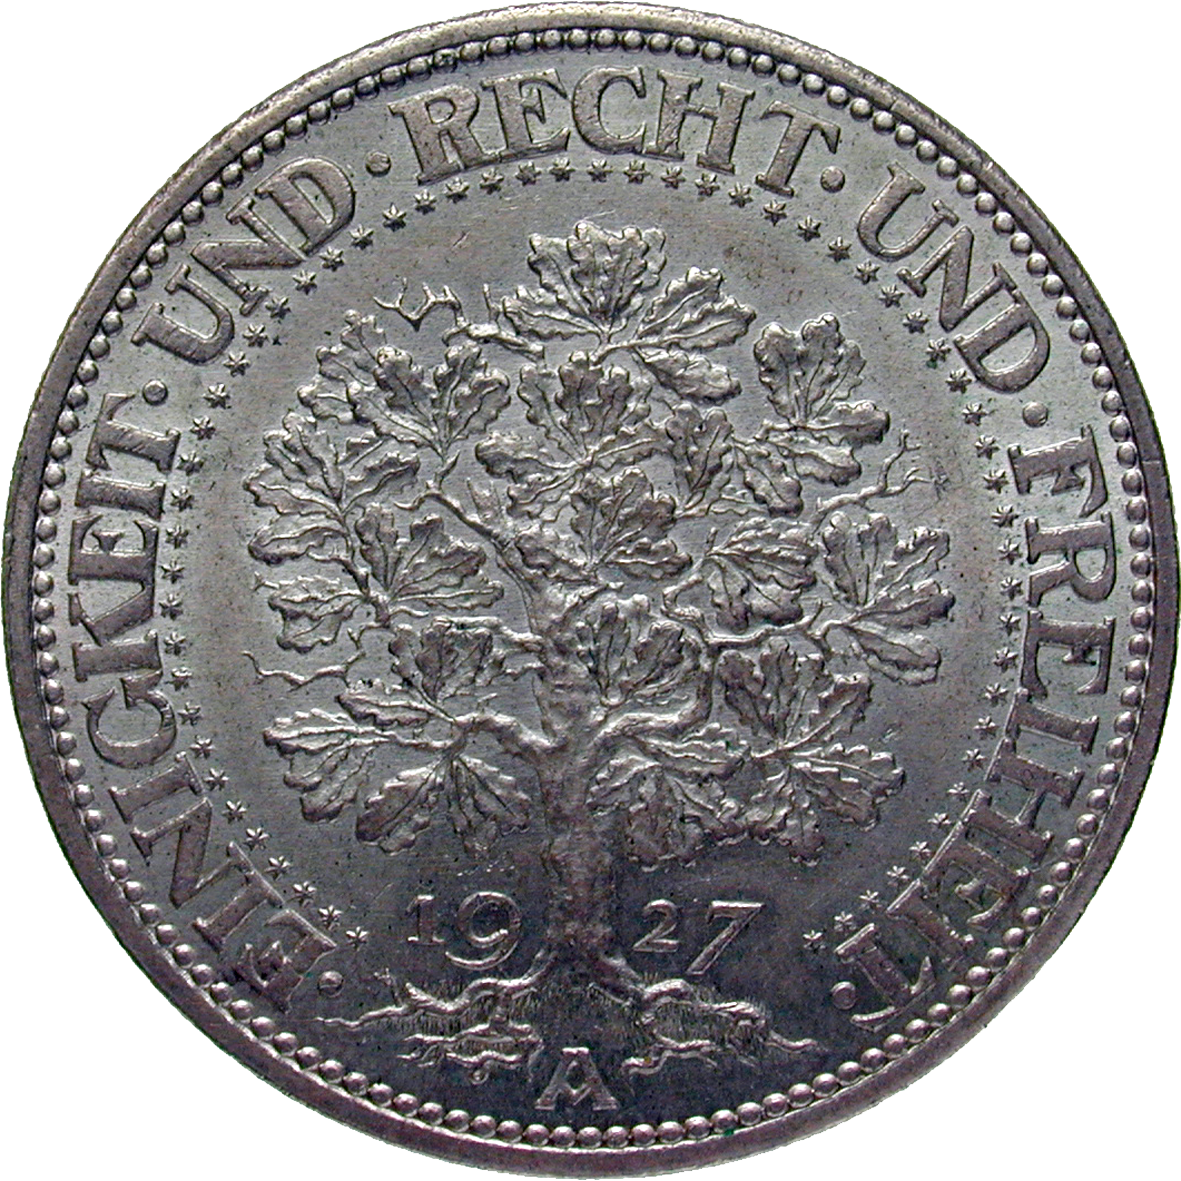 Deutsches Reich, Weimarer Republik, 5 Reichsmark 1927 (reverse)